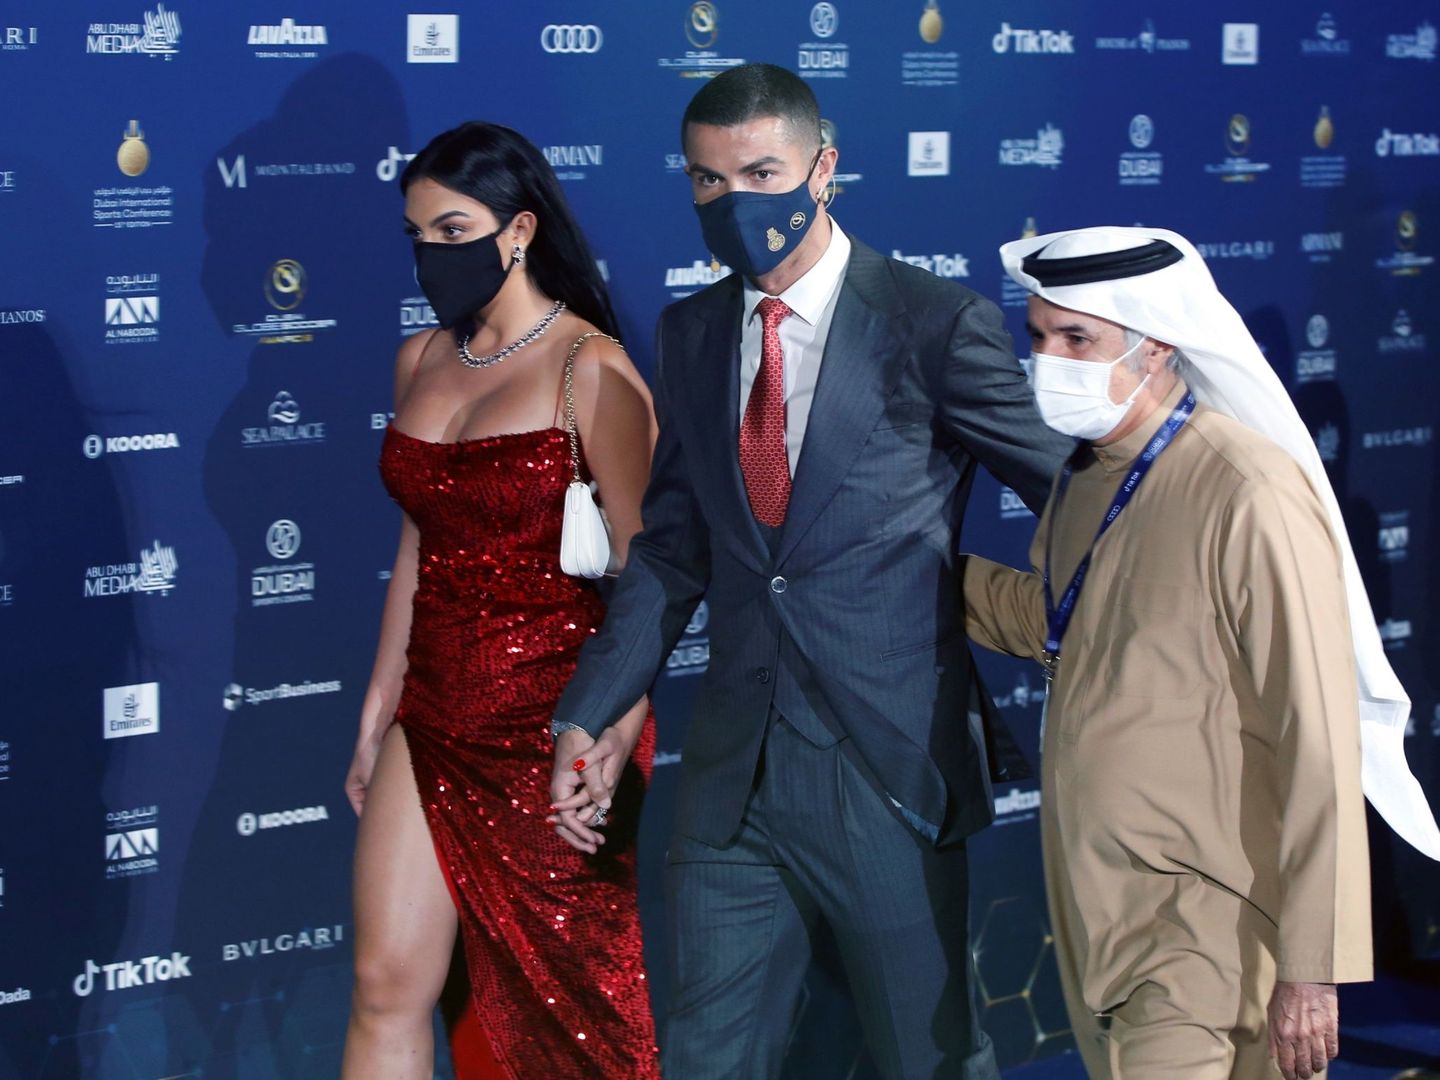 La modelo argentina Georgina Rodríguez, su novio Cristiano Ronaldo y el secretario general del Consejo de Deportes de Dubai, en la gala. (Efe)